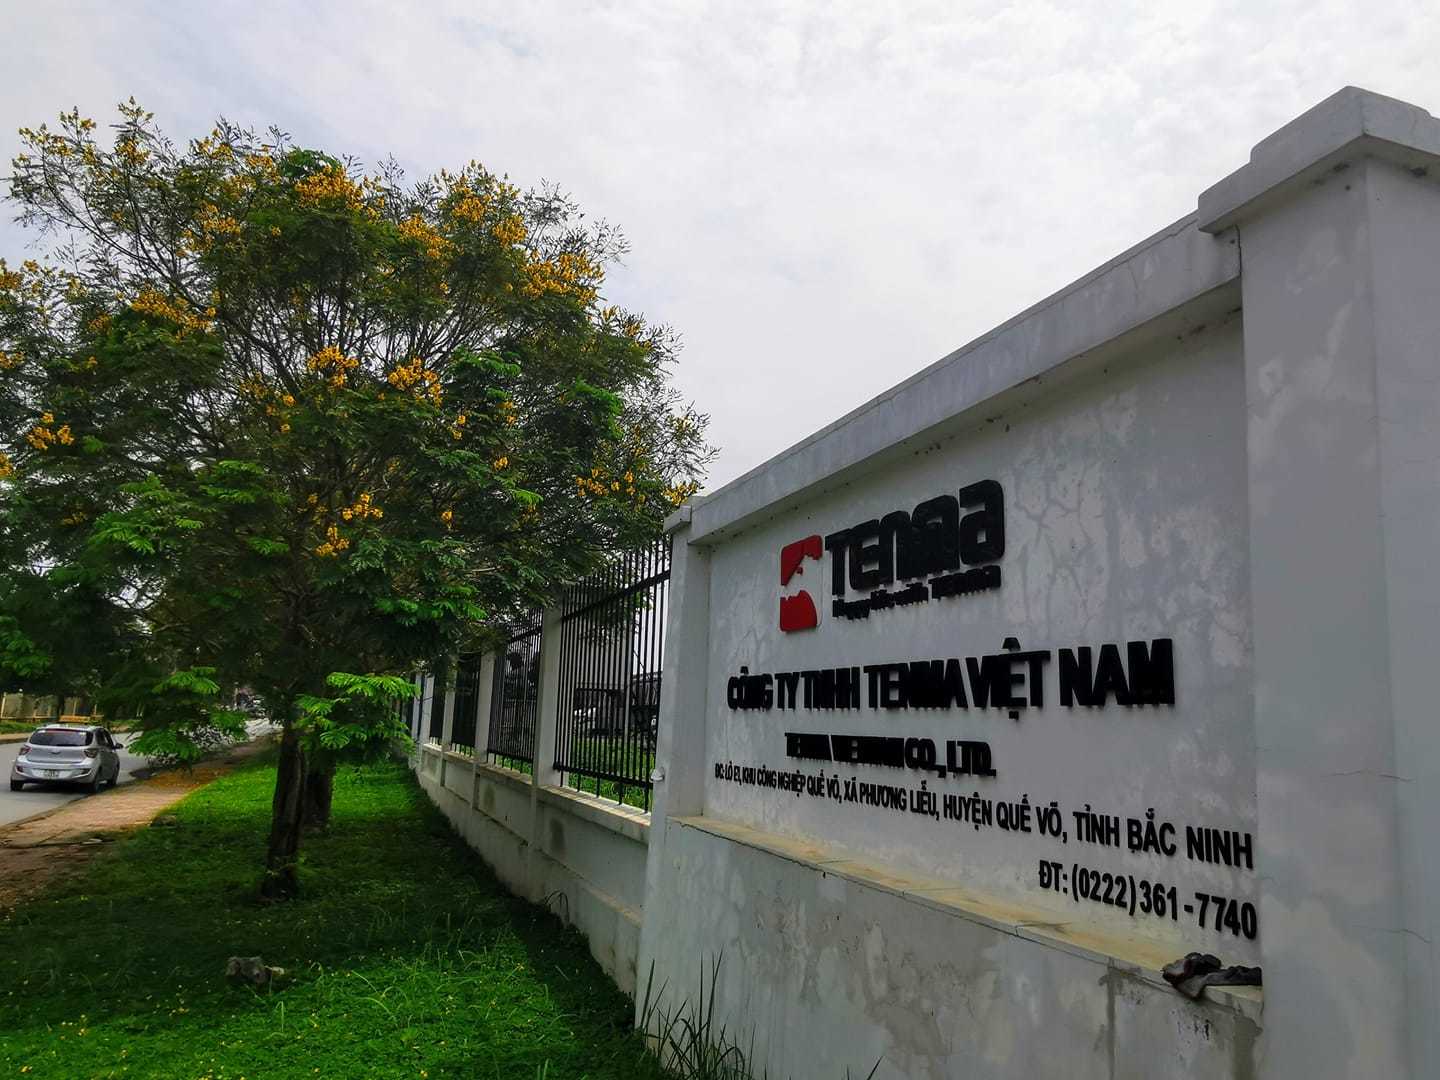 Cục Thuế Bắc Ninh nói không nhận bất cứ lợi ích gì từ Tenma Việt Nam